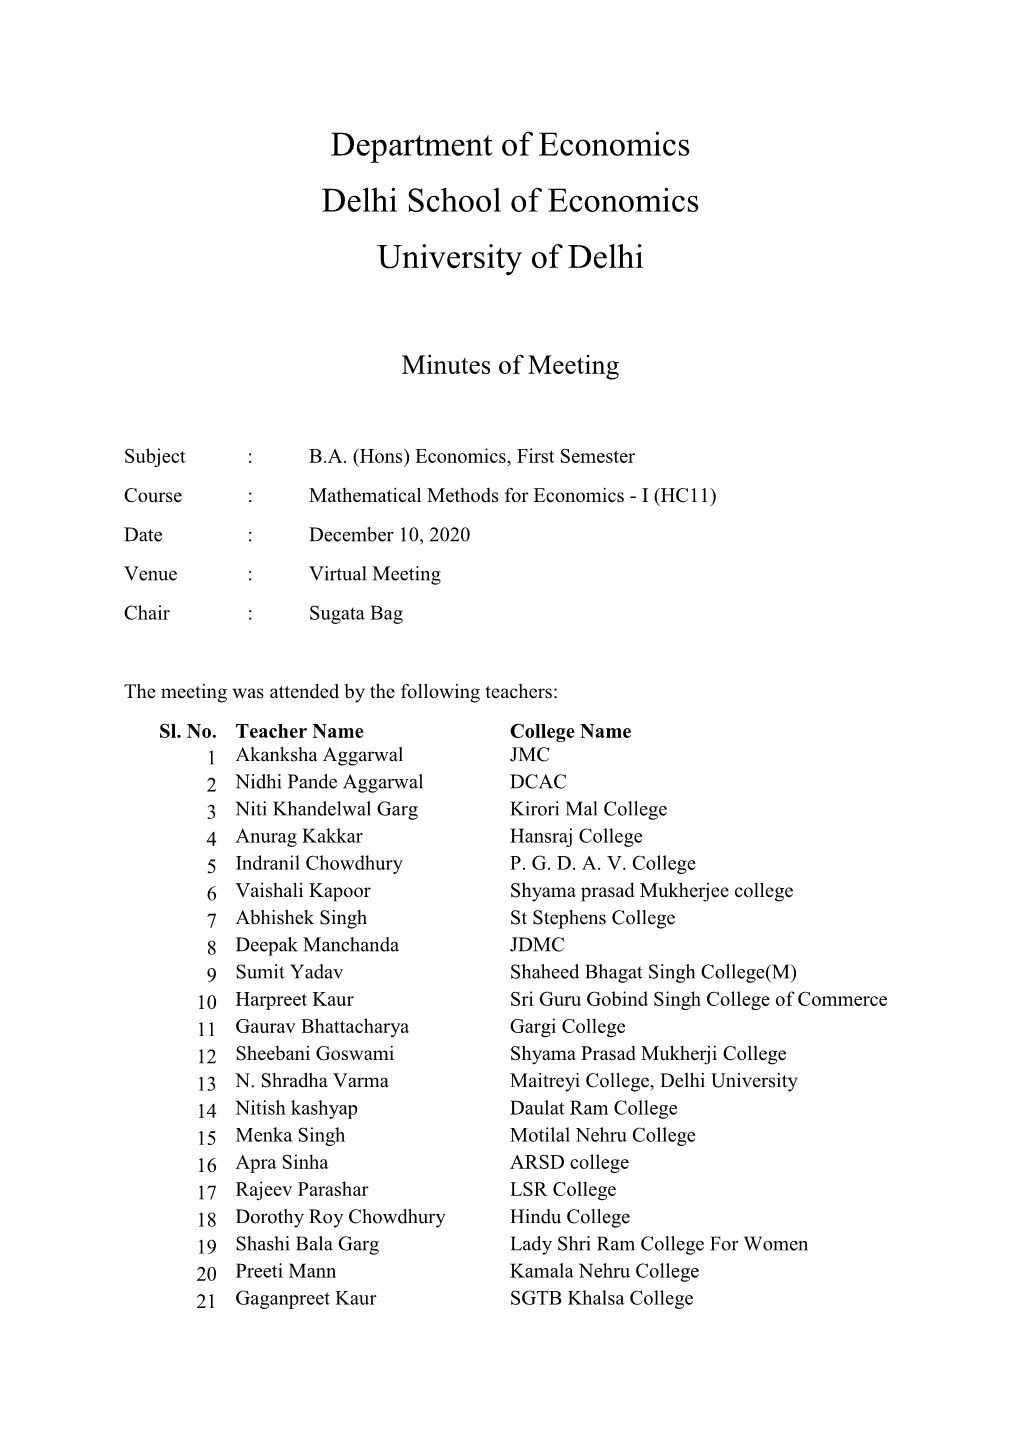 Department of Economics Delhi School of Economics University of Delhi